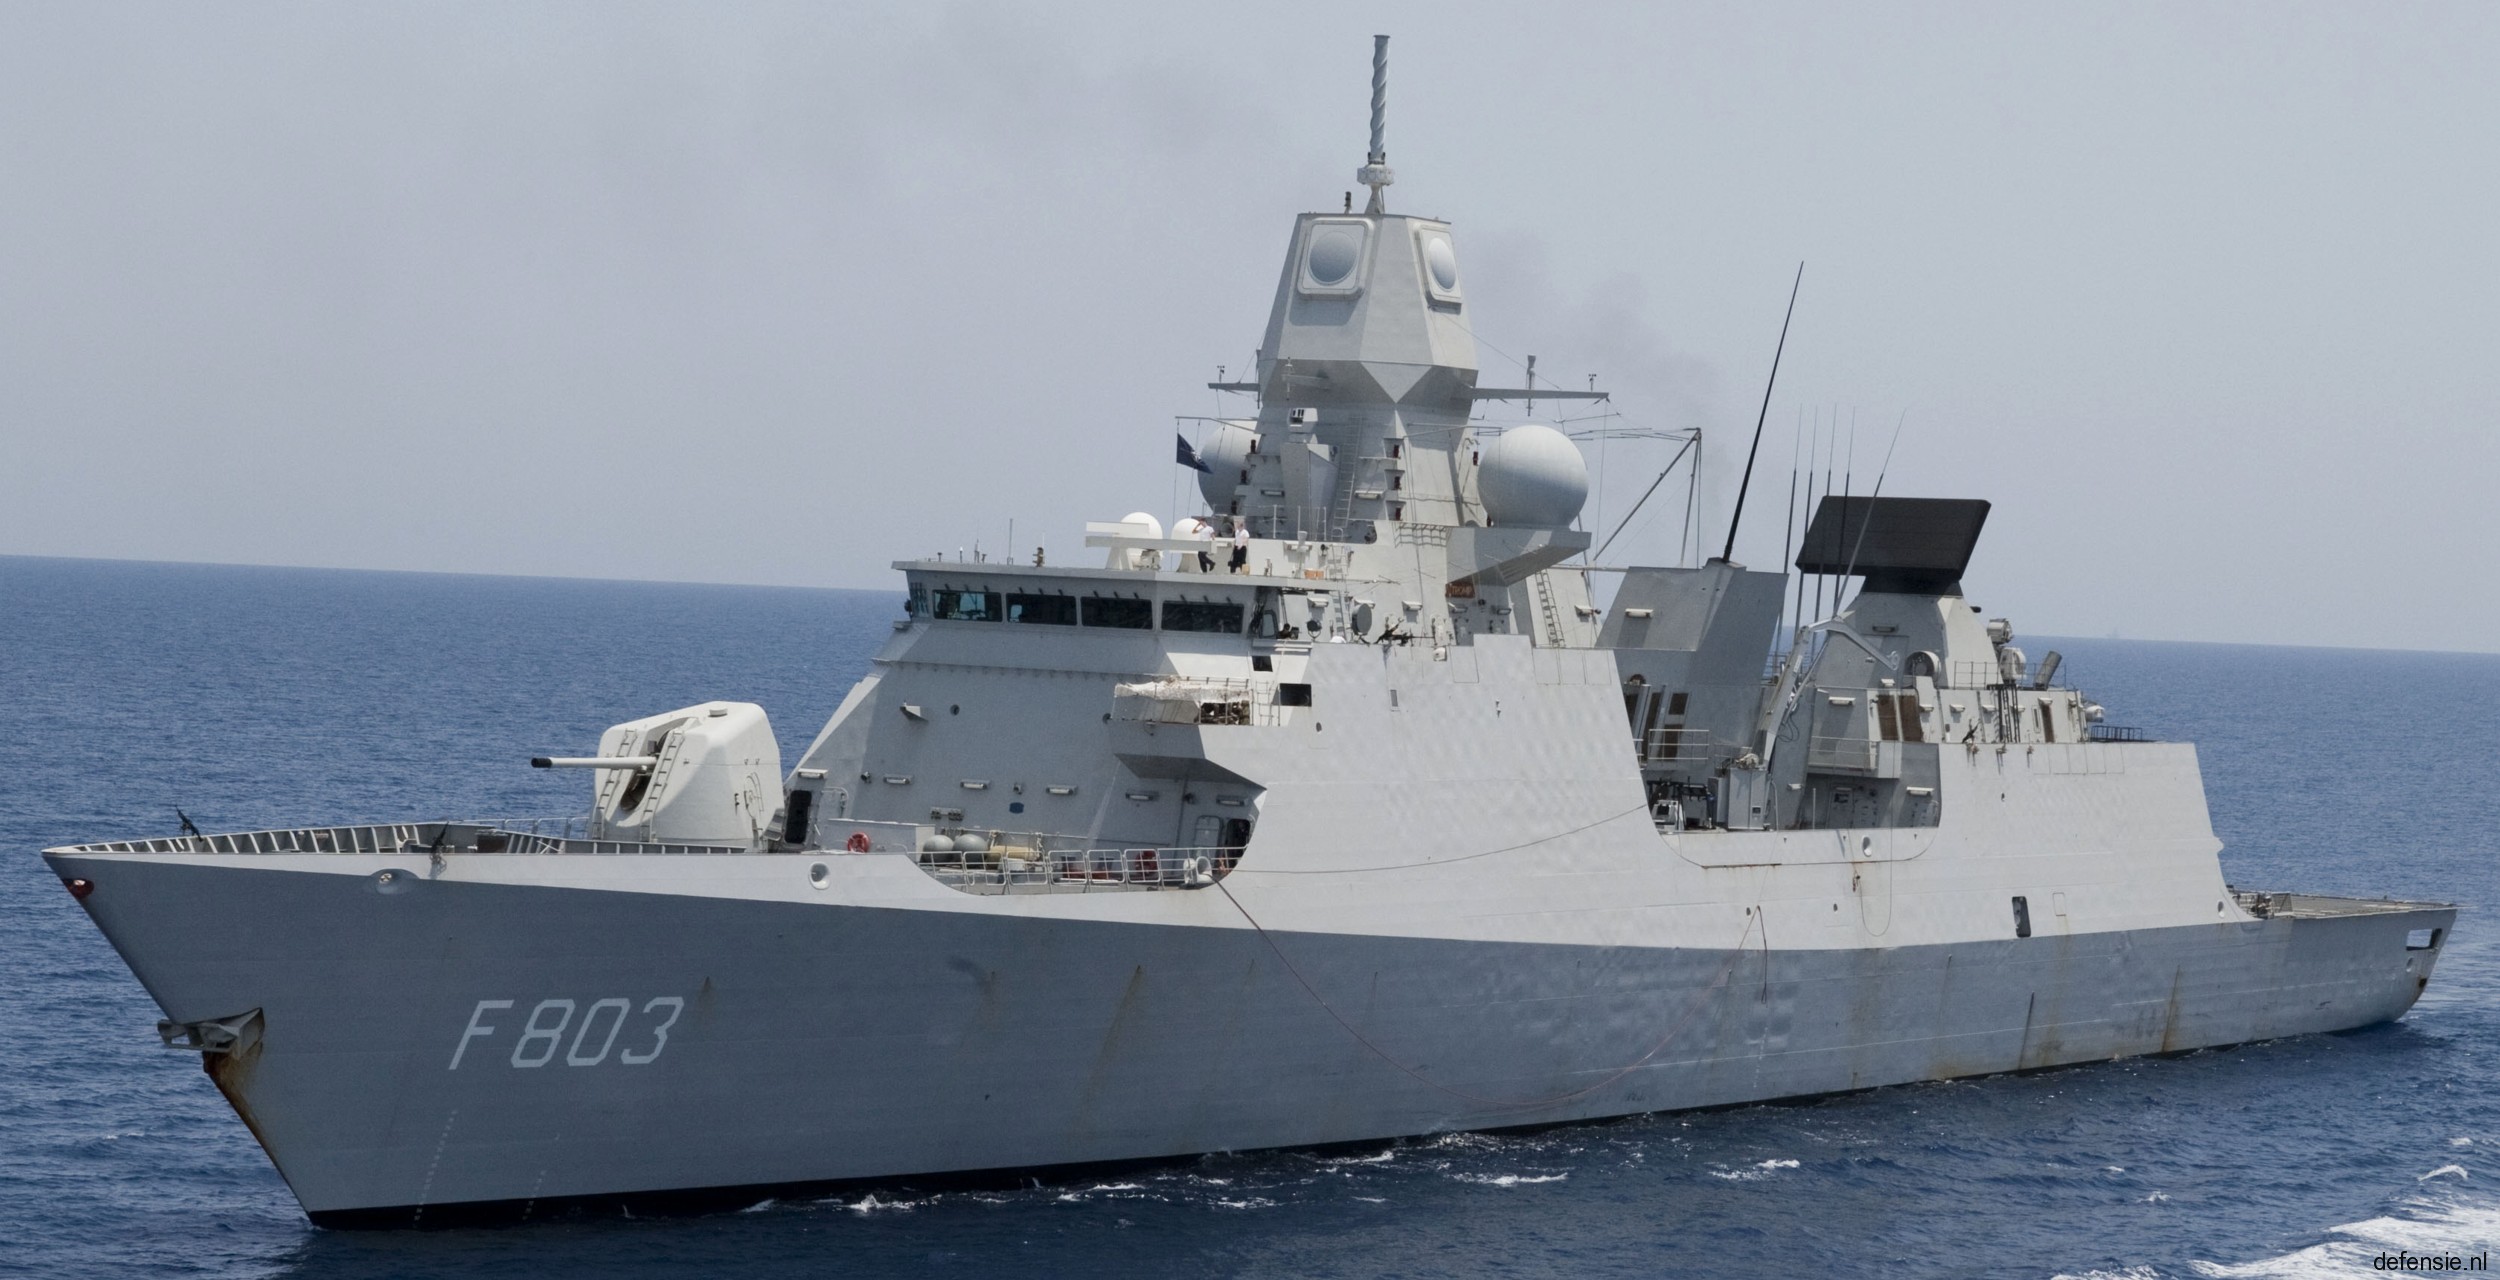 f-803 hnlms tromp de zeven provincien class guided missile frigate royal netherlands navy koninklijke marine schelde shipbuilding vlissingen den helder 15x